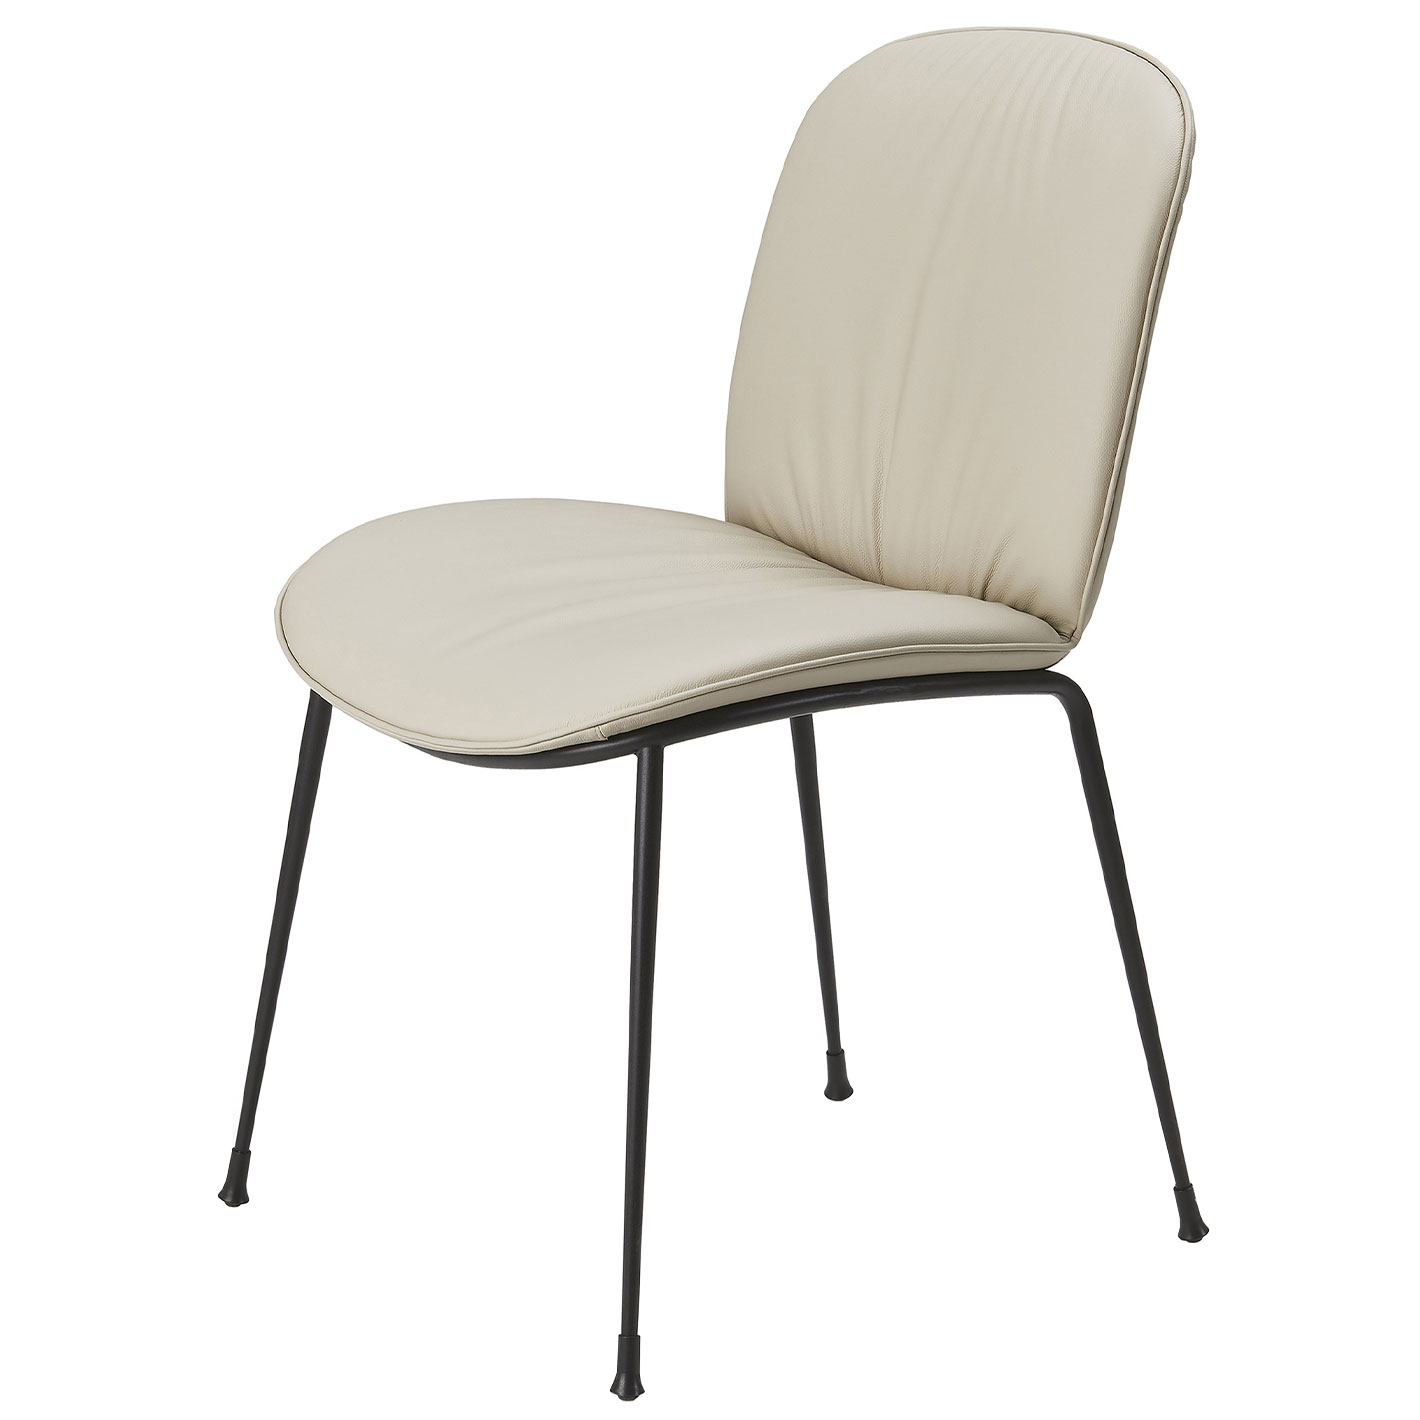 Tische & Stühle - TINA Stuhl